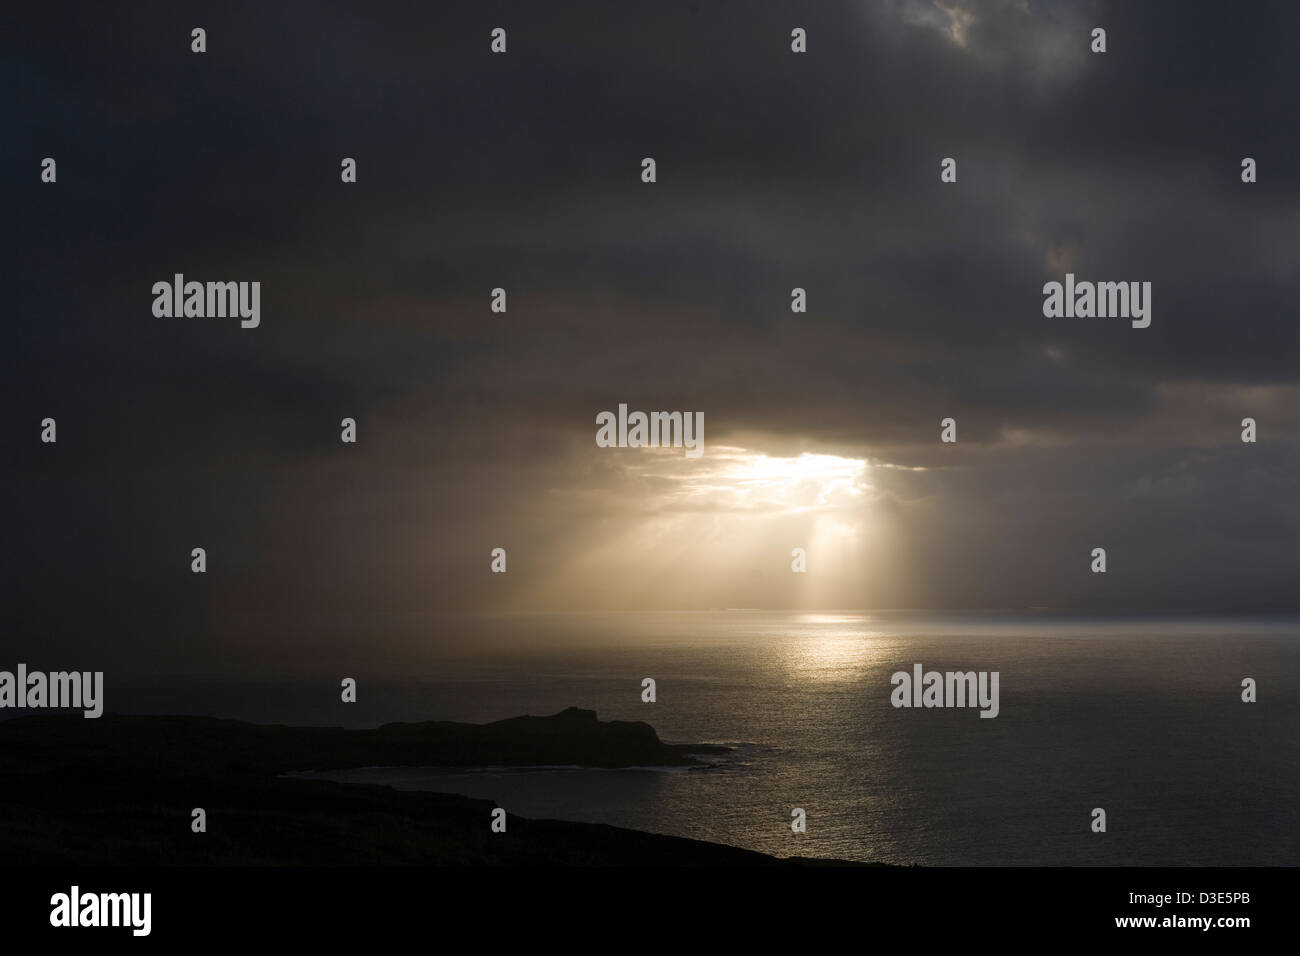 Isola di Eigg, Scozia - 30 ottobre 2007: l'ultimo del sole è sul punto di scomparire per diversi giorni dietro il cloud e la guida sotto la pioggia. Foto di Mike Goldwater Foto Stock